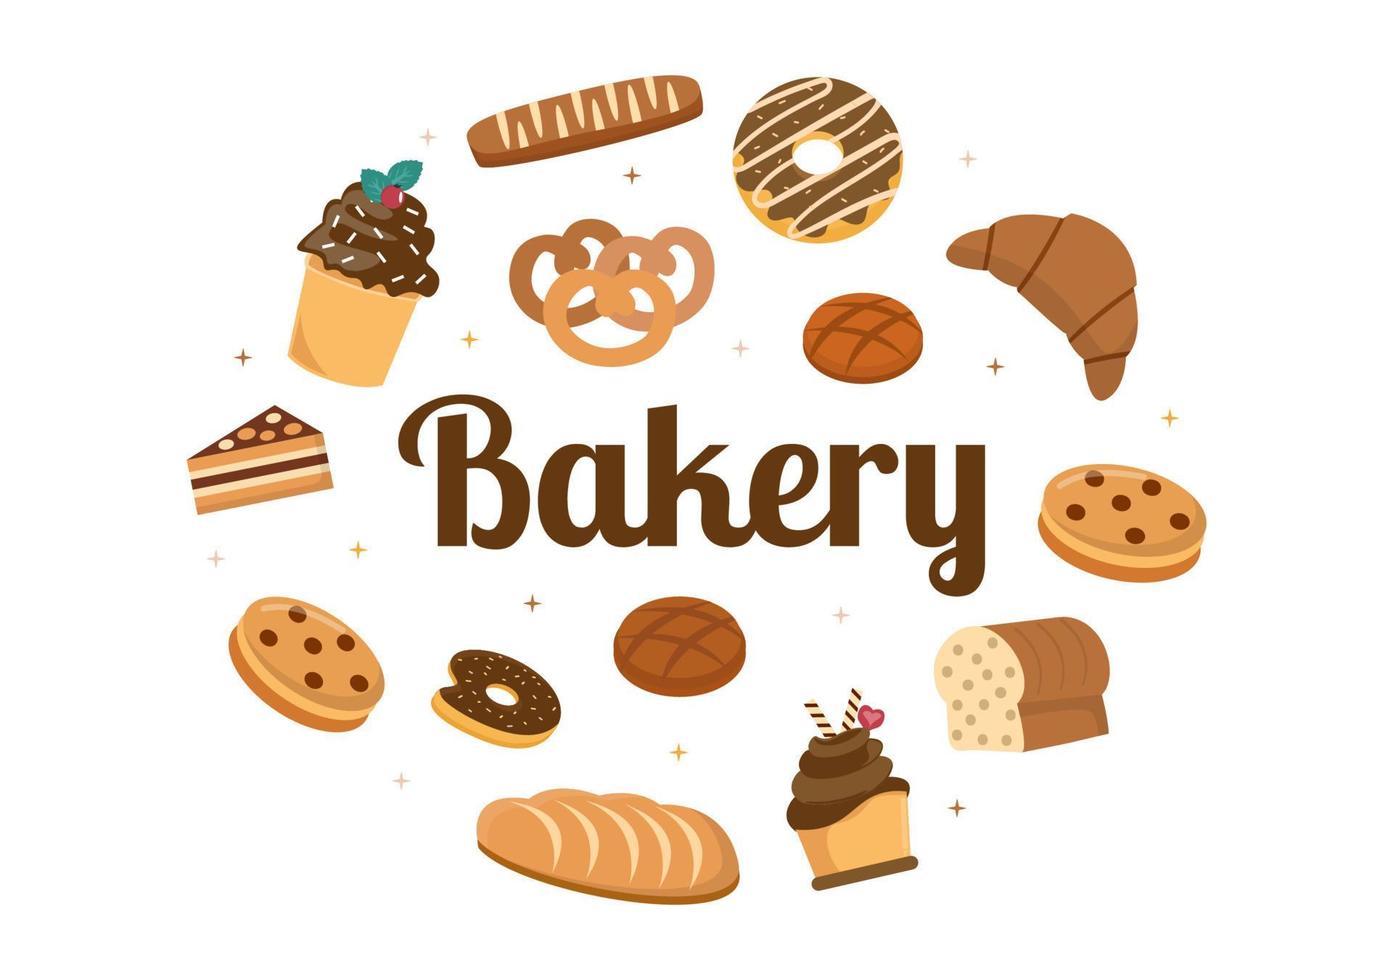 panadería que vende varios tipos de pan, como pan blanco, pastelería y otros, todos horneados en un fondo plano para ilustrar afiches vector